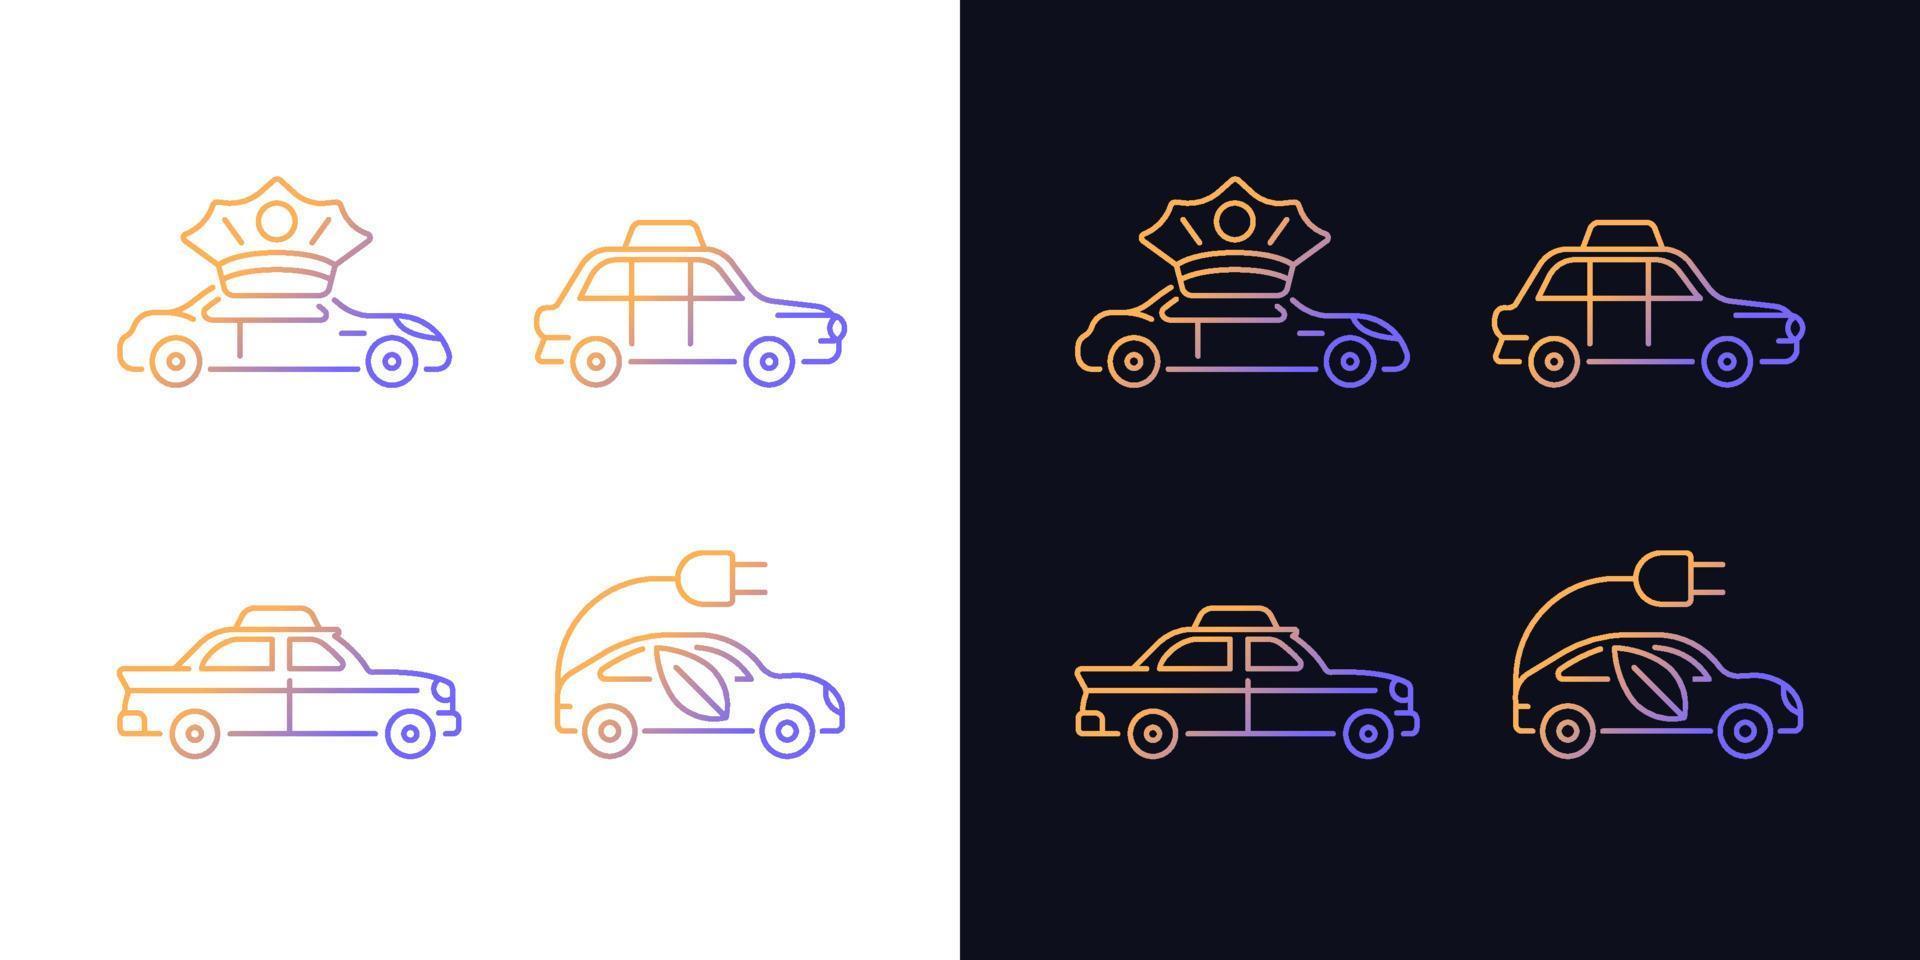 Taxibuchungs-Gradientensymbole für den dunklen und hellen Modus vektor